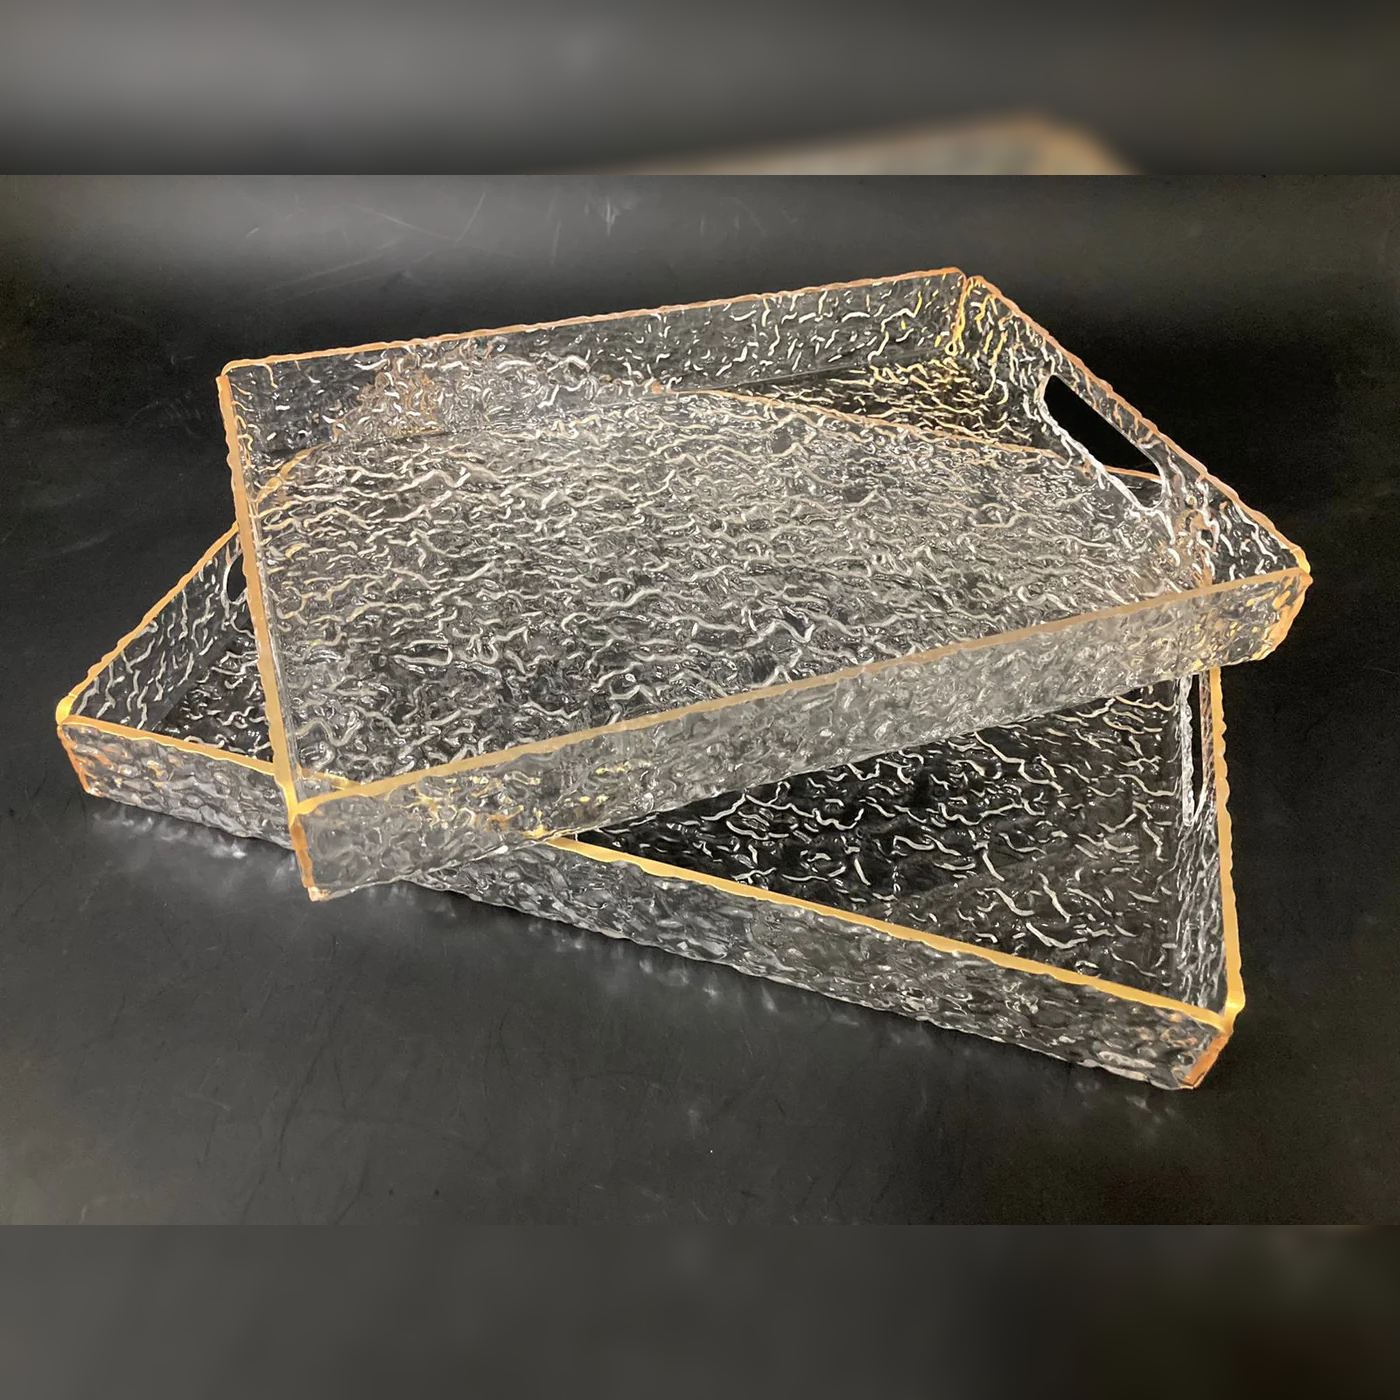 Set of 2 Acrylic Serving Trays Gold rim w Texture Design - Lunaz Shop